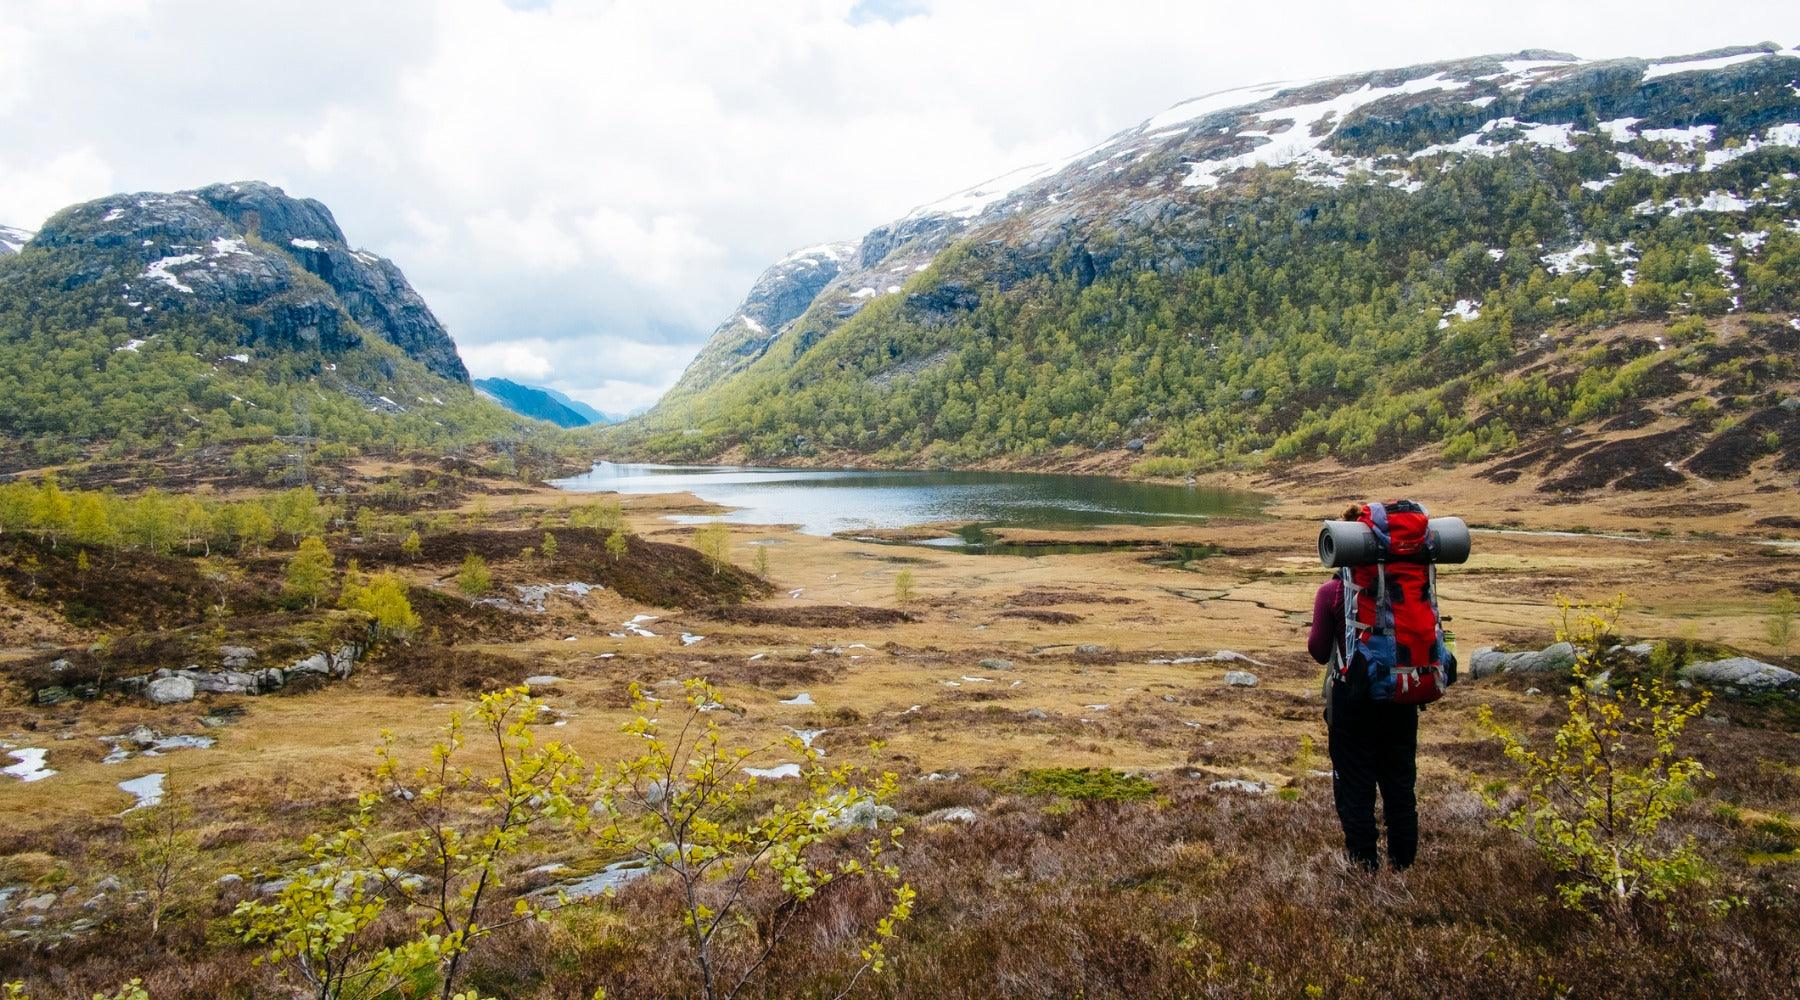 Wanderlust Nordics - Exploring Trails in Scandinavia - gestalten